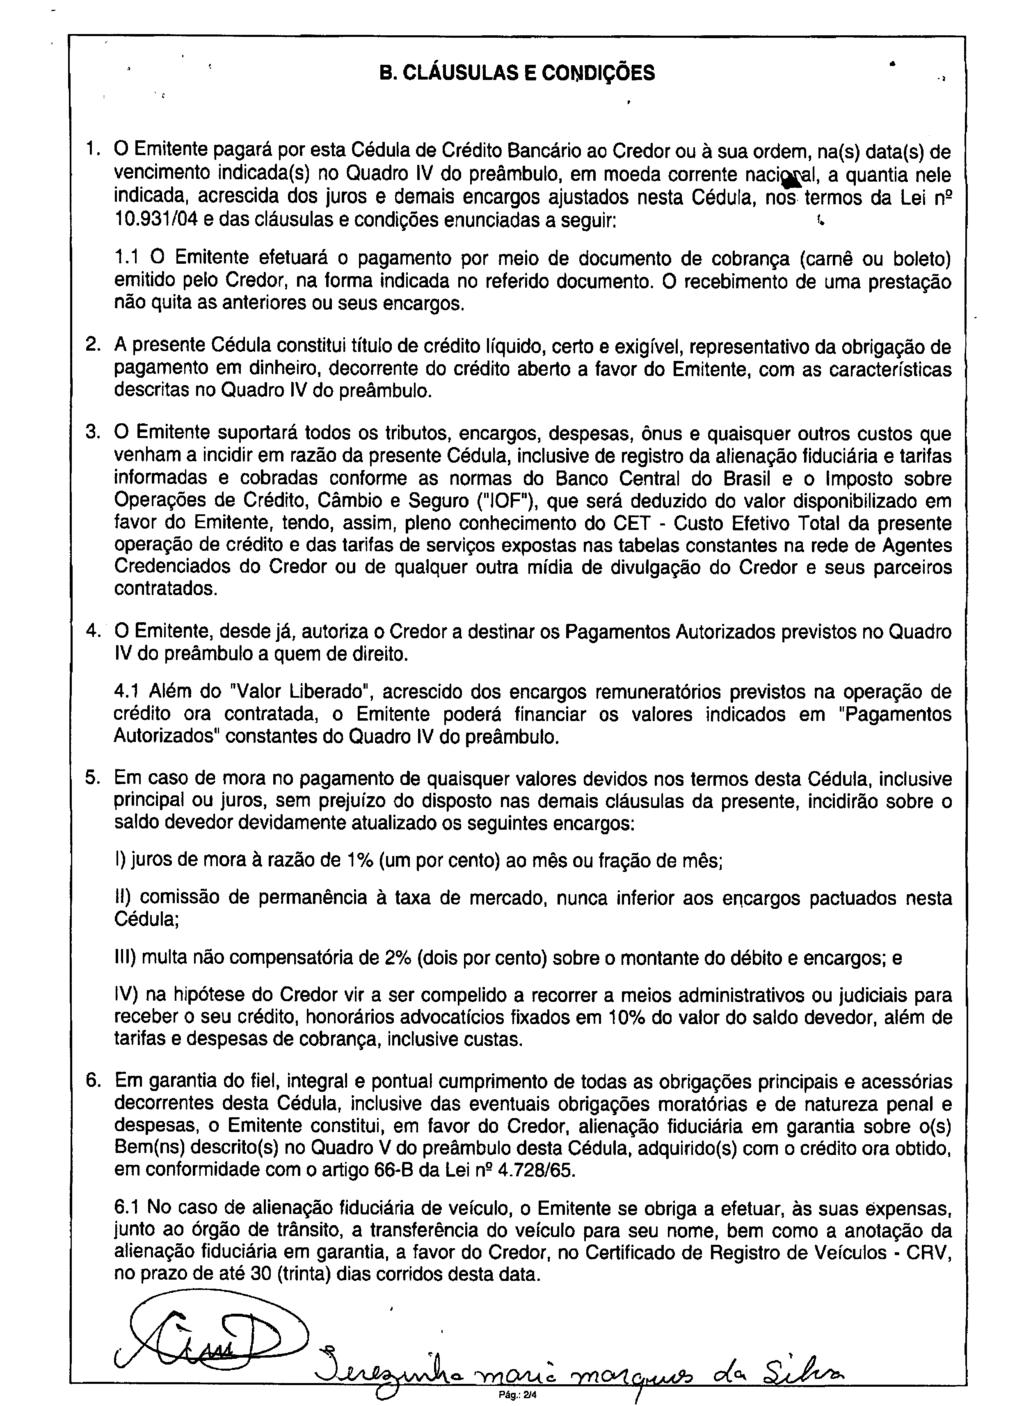 fls. 49 Este documento é cópia do original, assinado digitalmente por MARCOS ANTONIO AVILA, liberado nos autos em 10/05/2016 às 17:08.